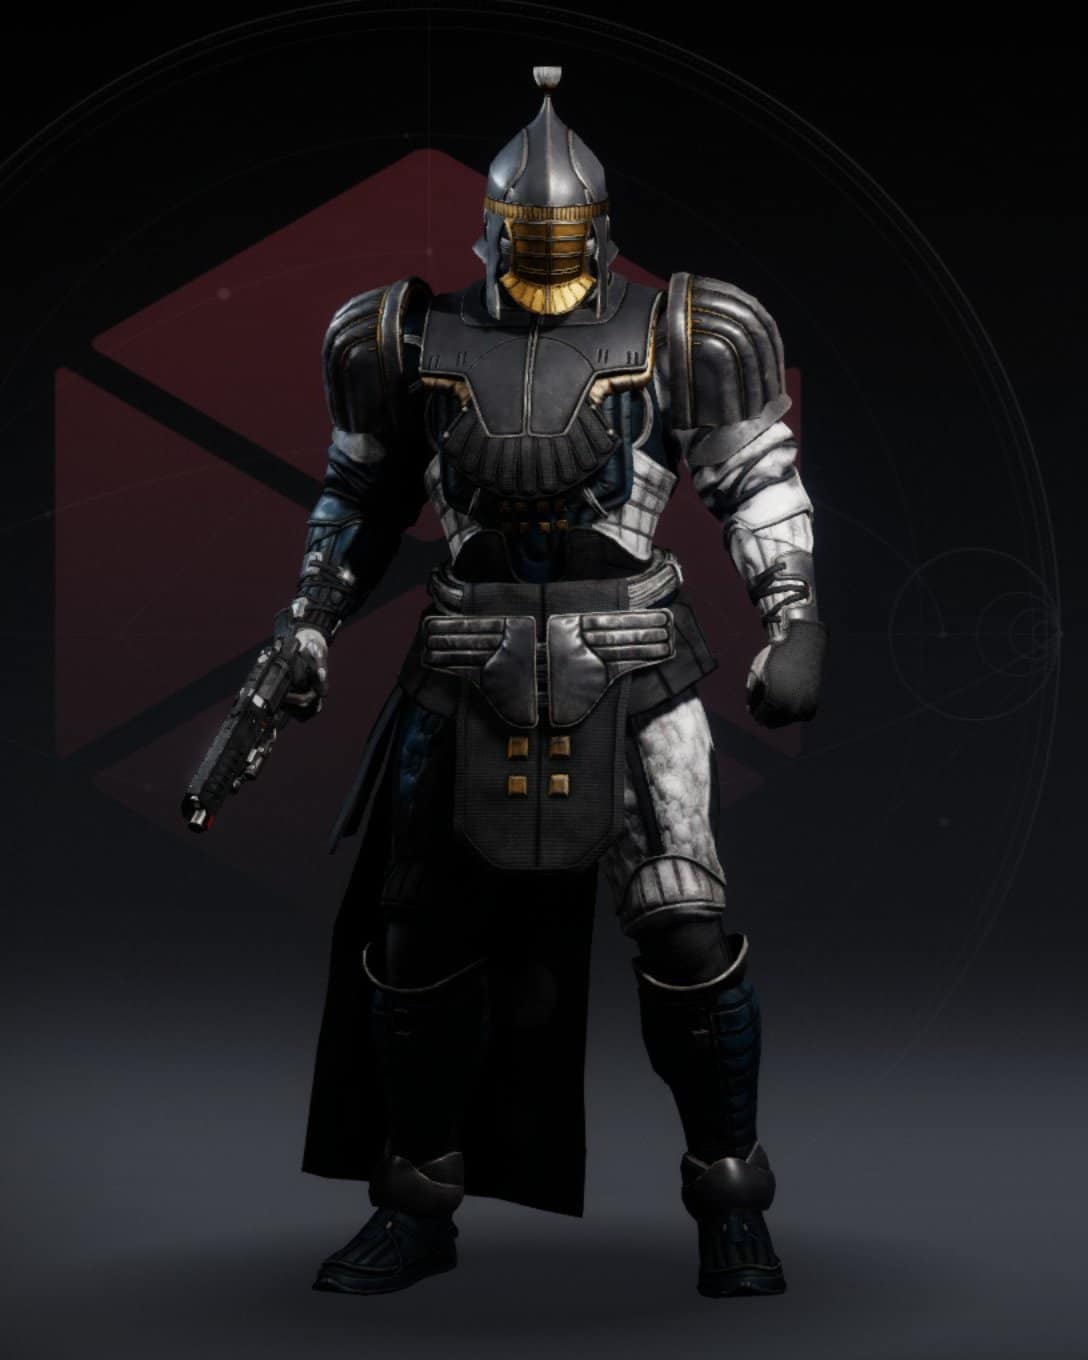 Praefectus armor Titan